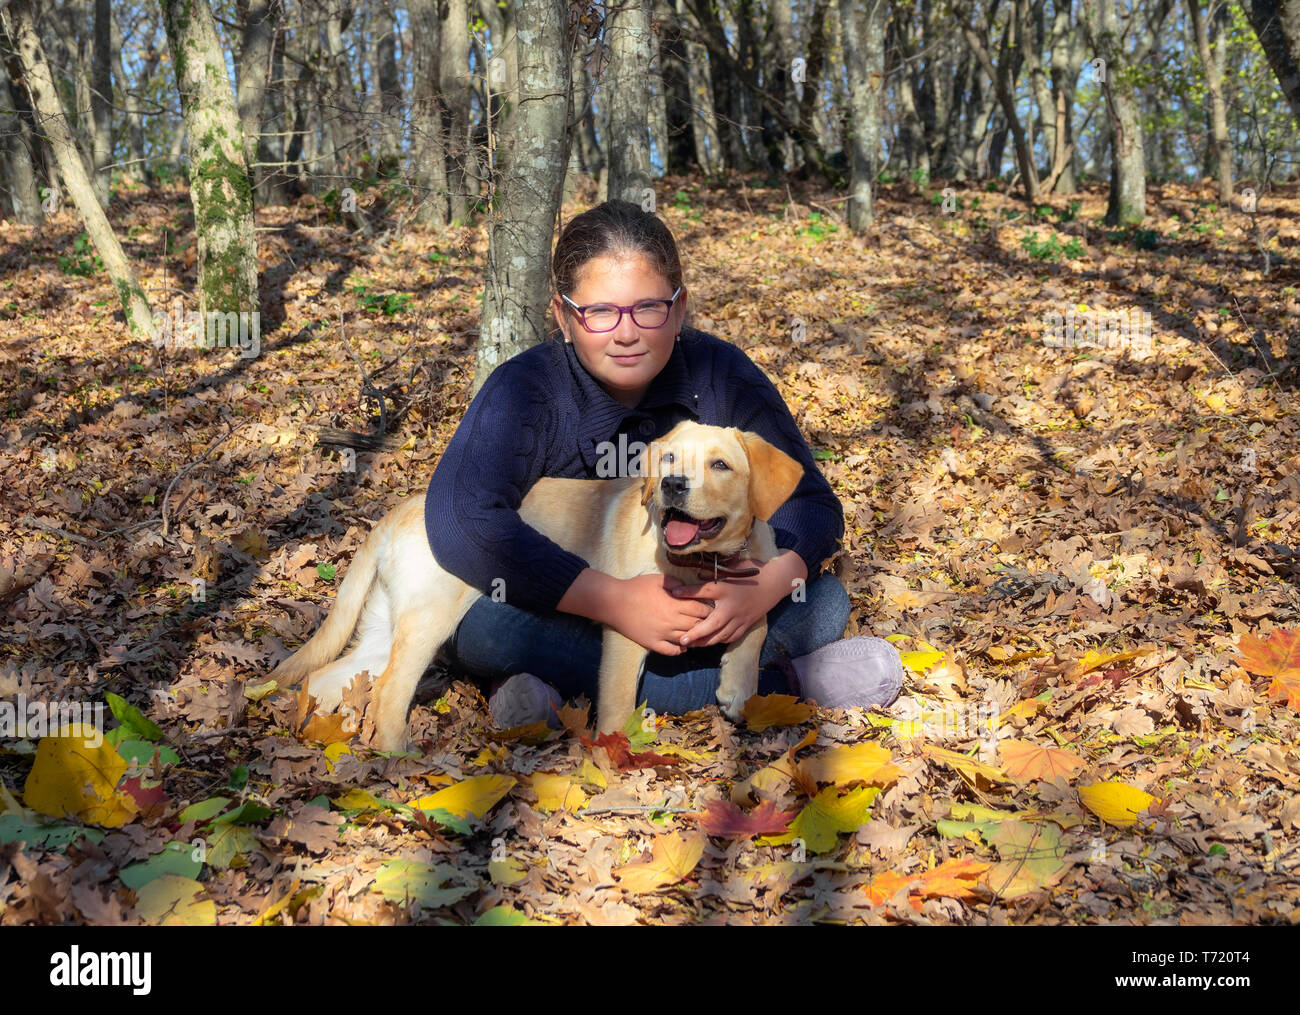 Portrait von Mädchen mit Hund im Herbst Wald Stockfoto